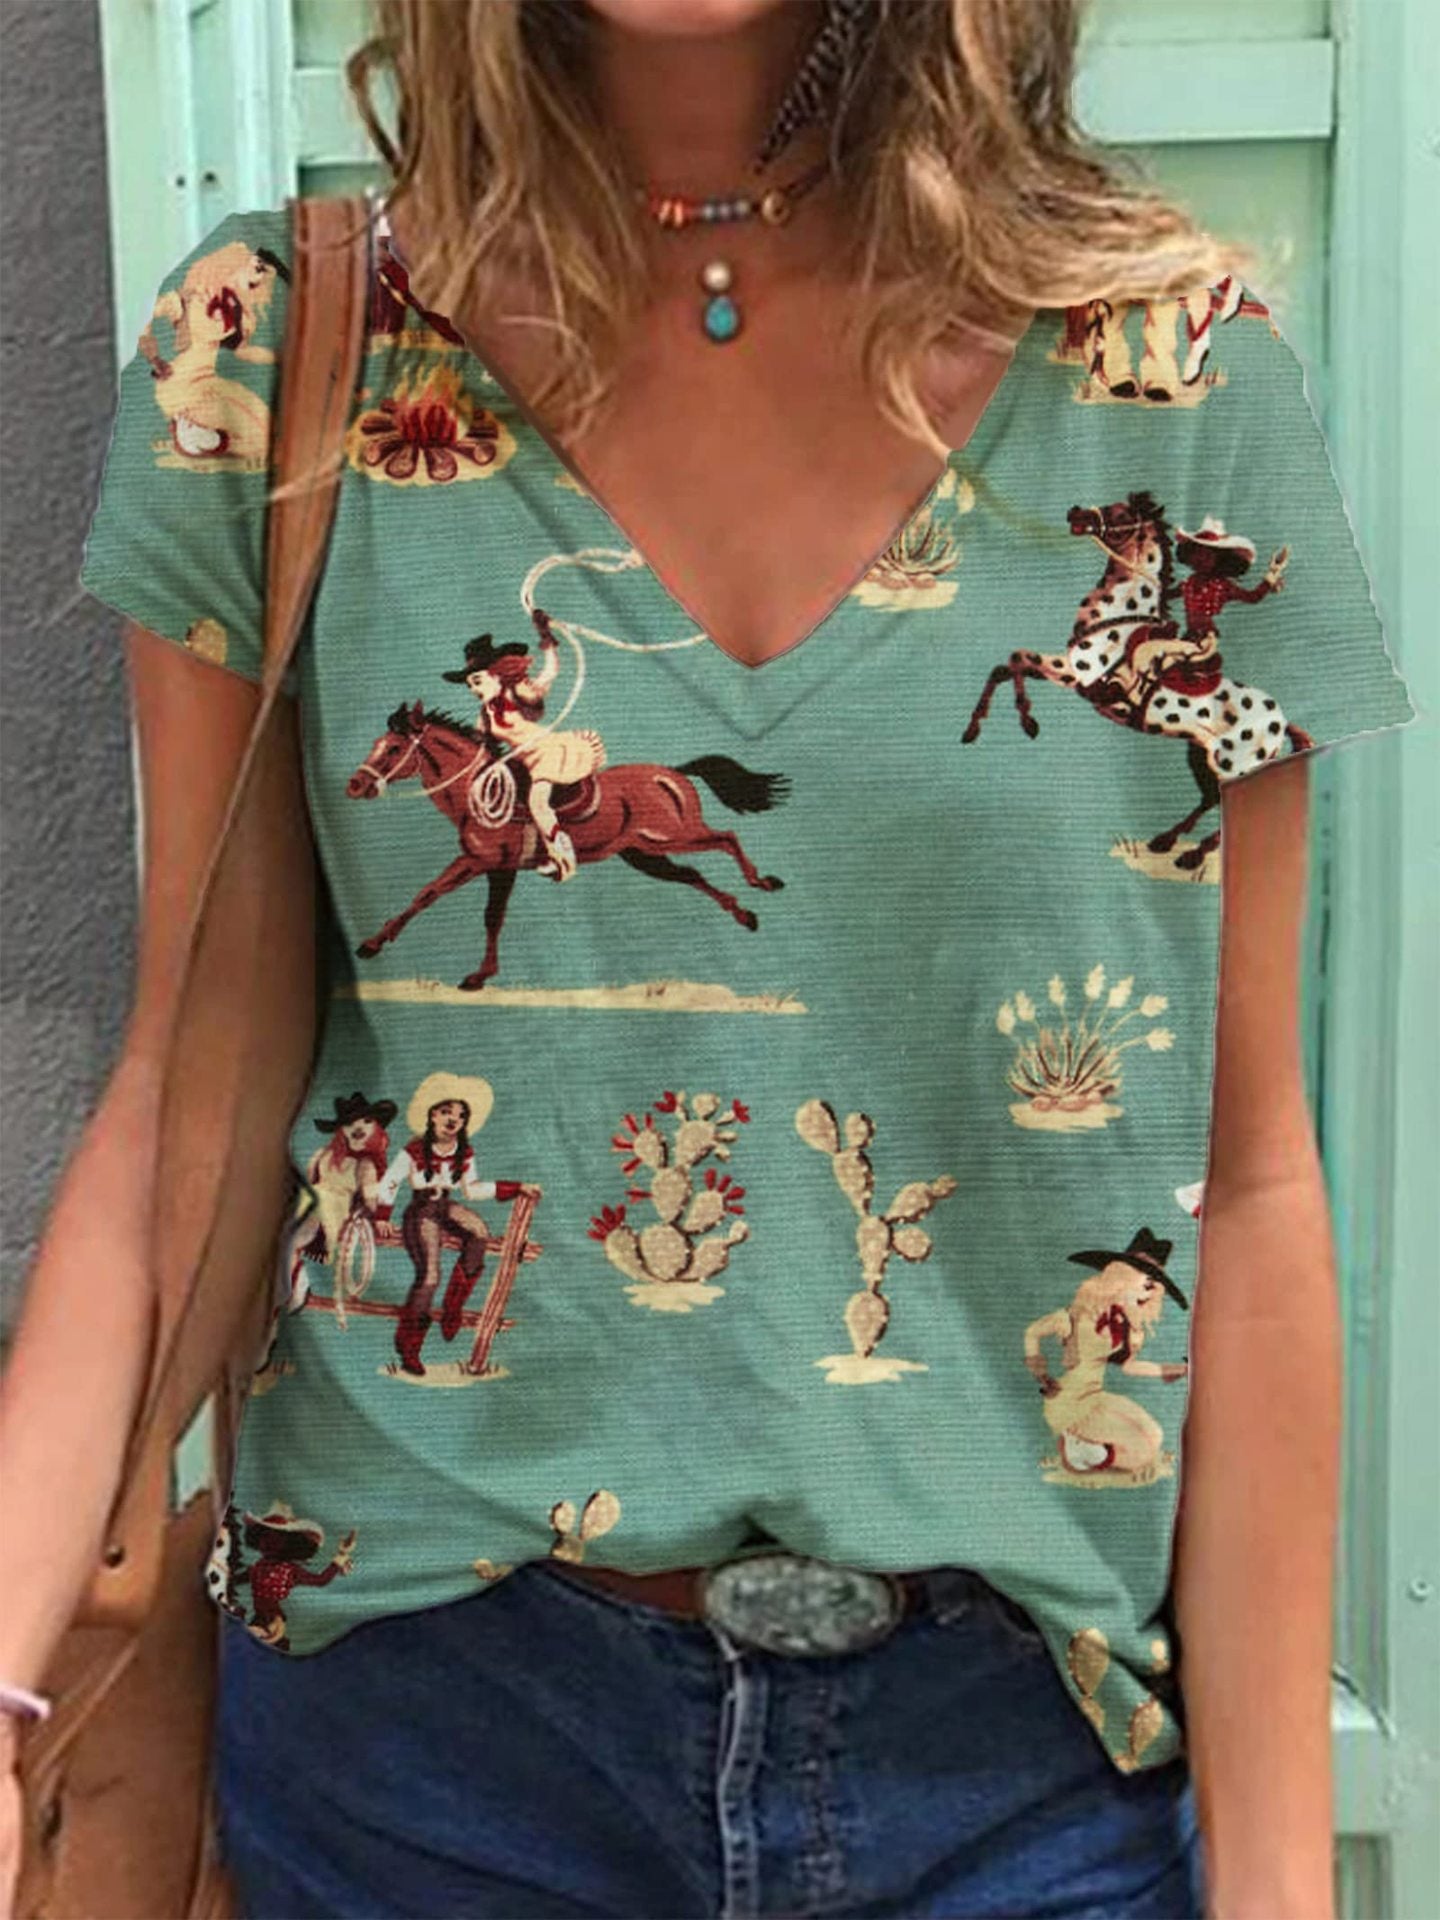 Women's Retro Western Denim Printing Short-sleeved T-shirt Blouses